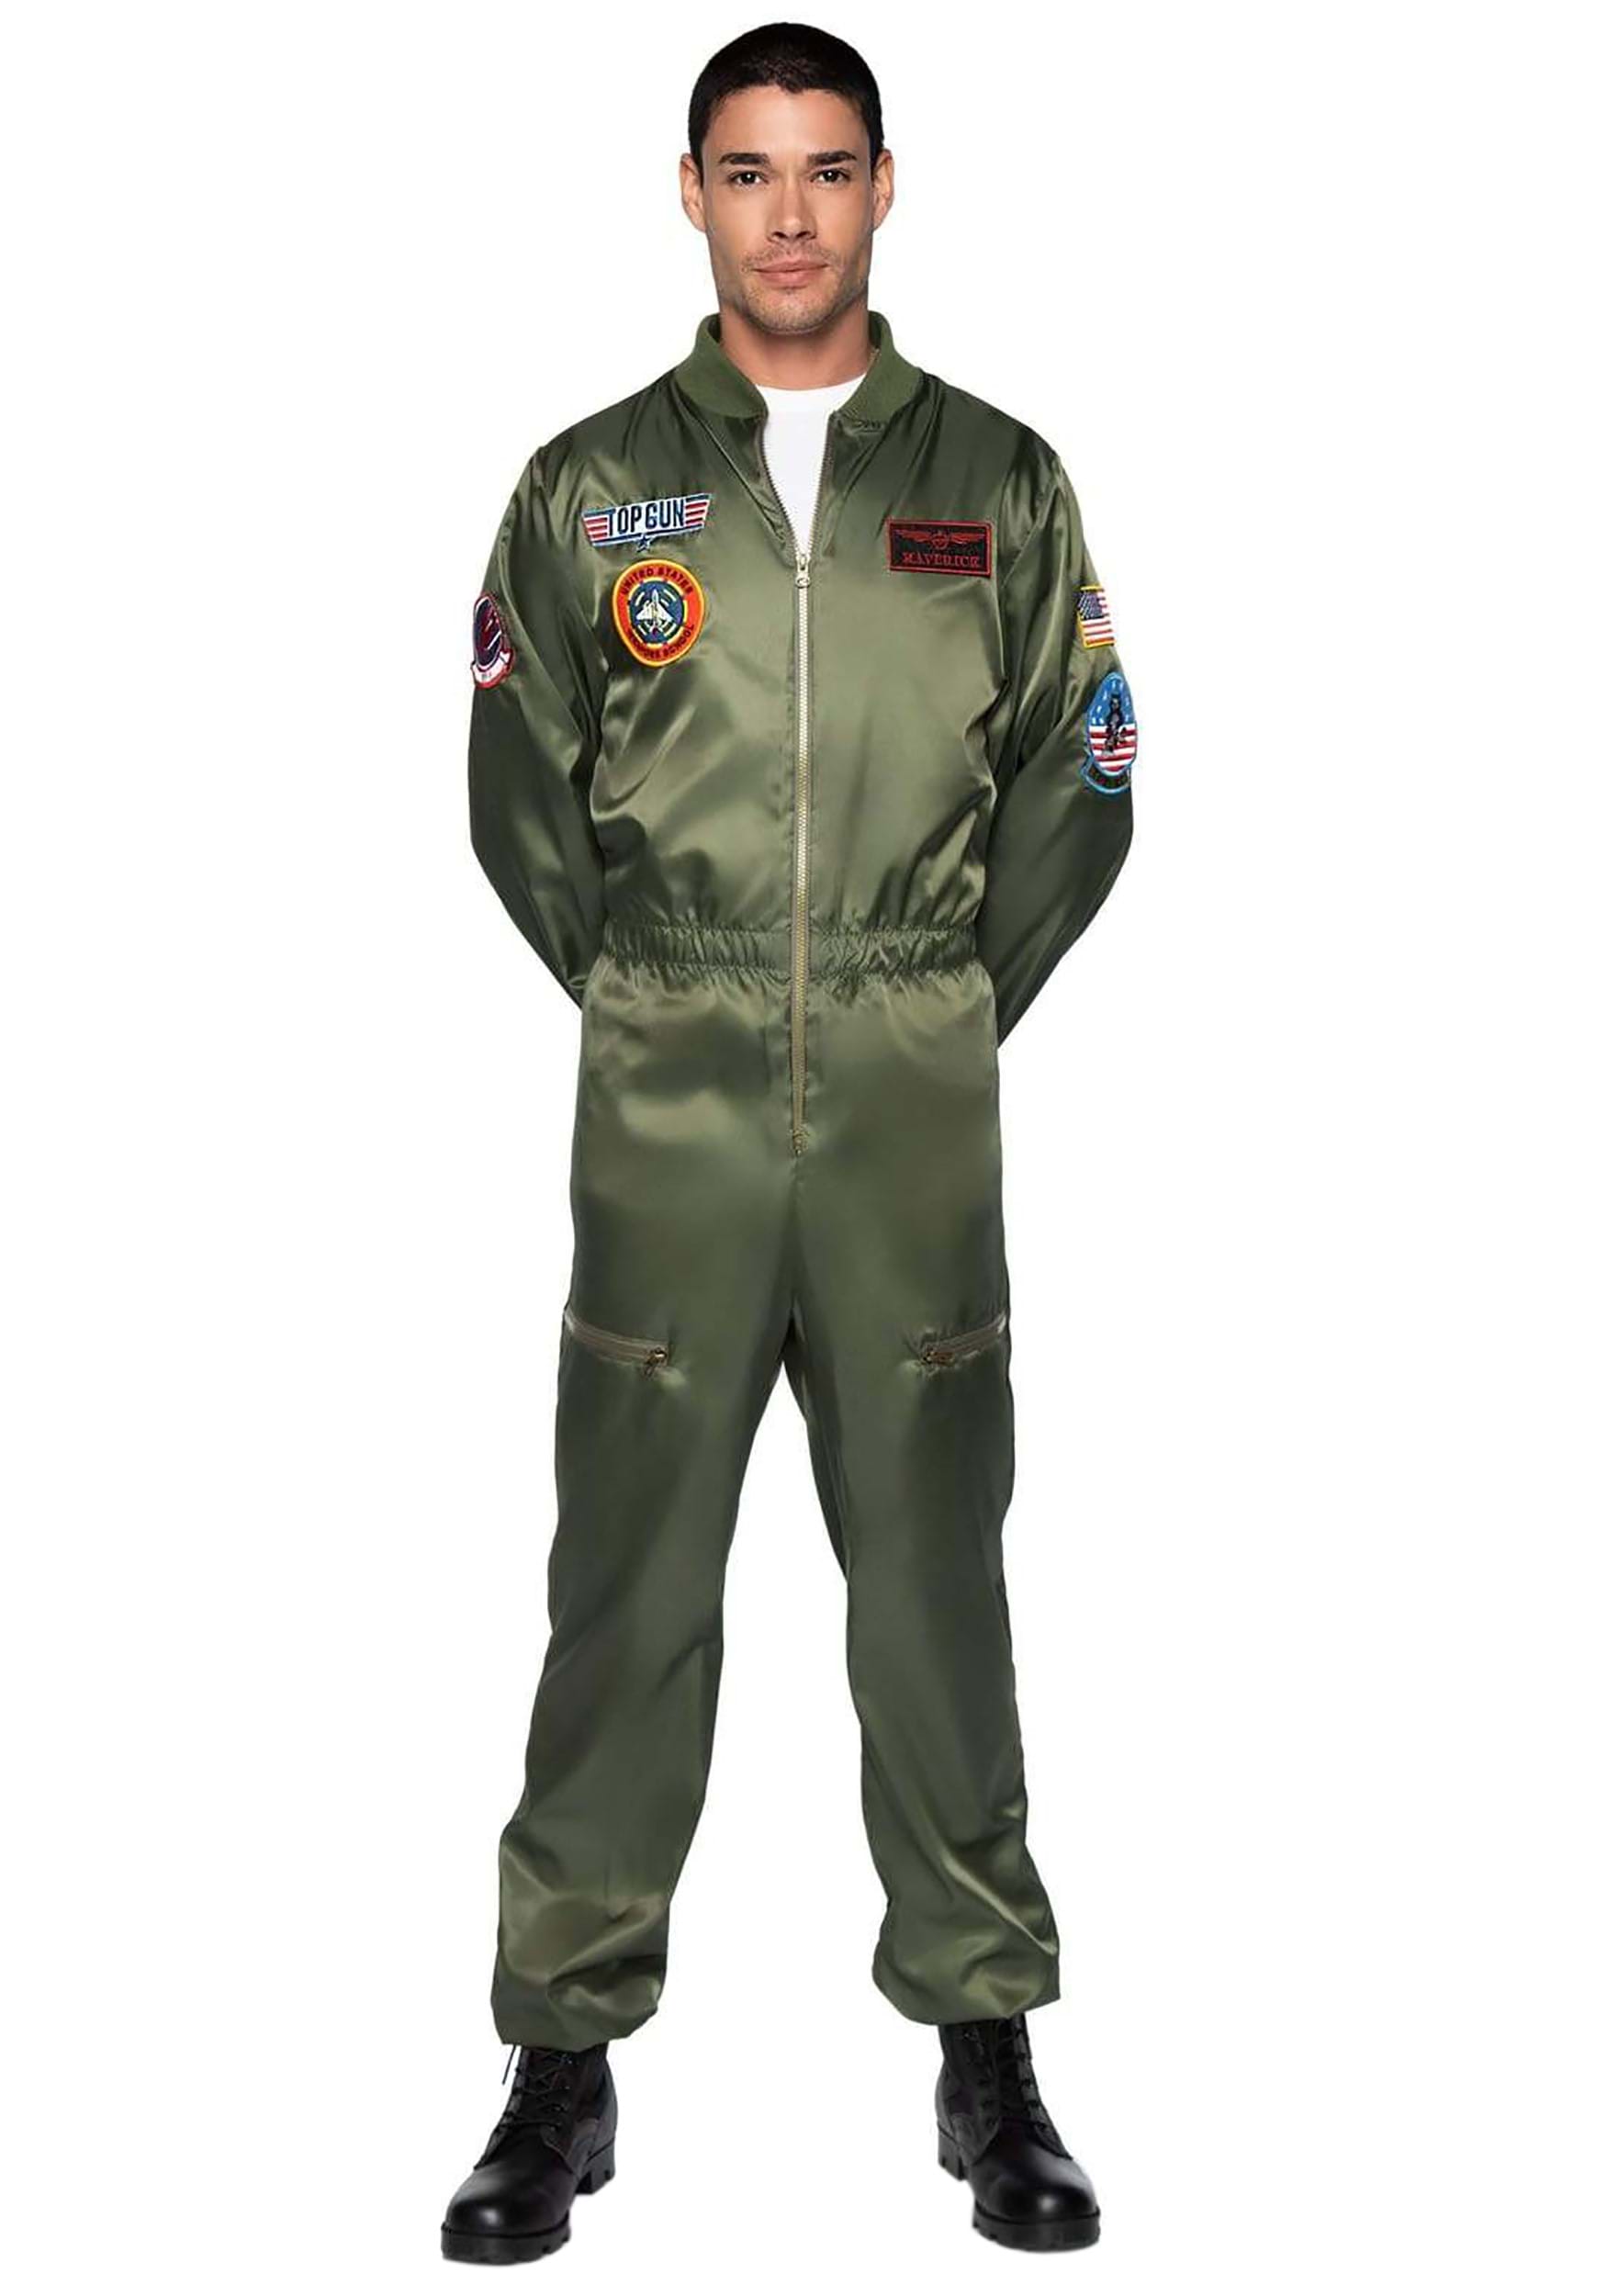 Stadion halv otte Zoologisk have Top Gun Men's Parachute Flight Suit Costume